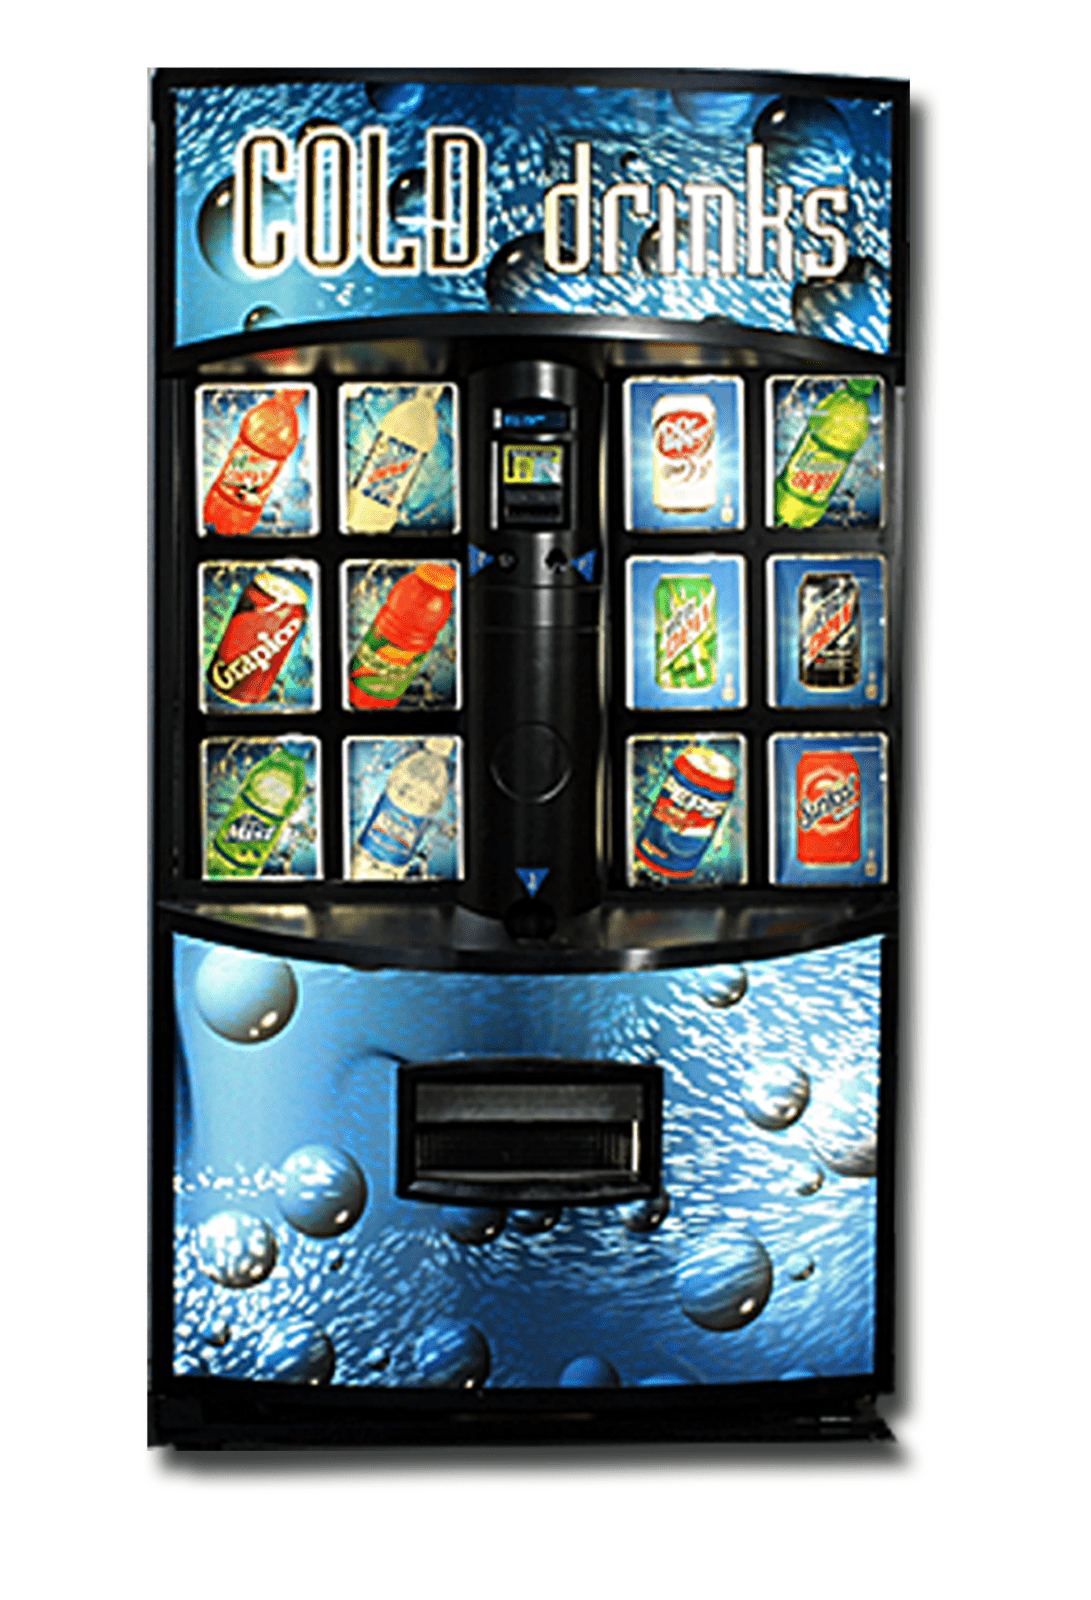 vendo soda machine